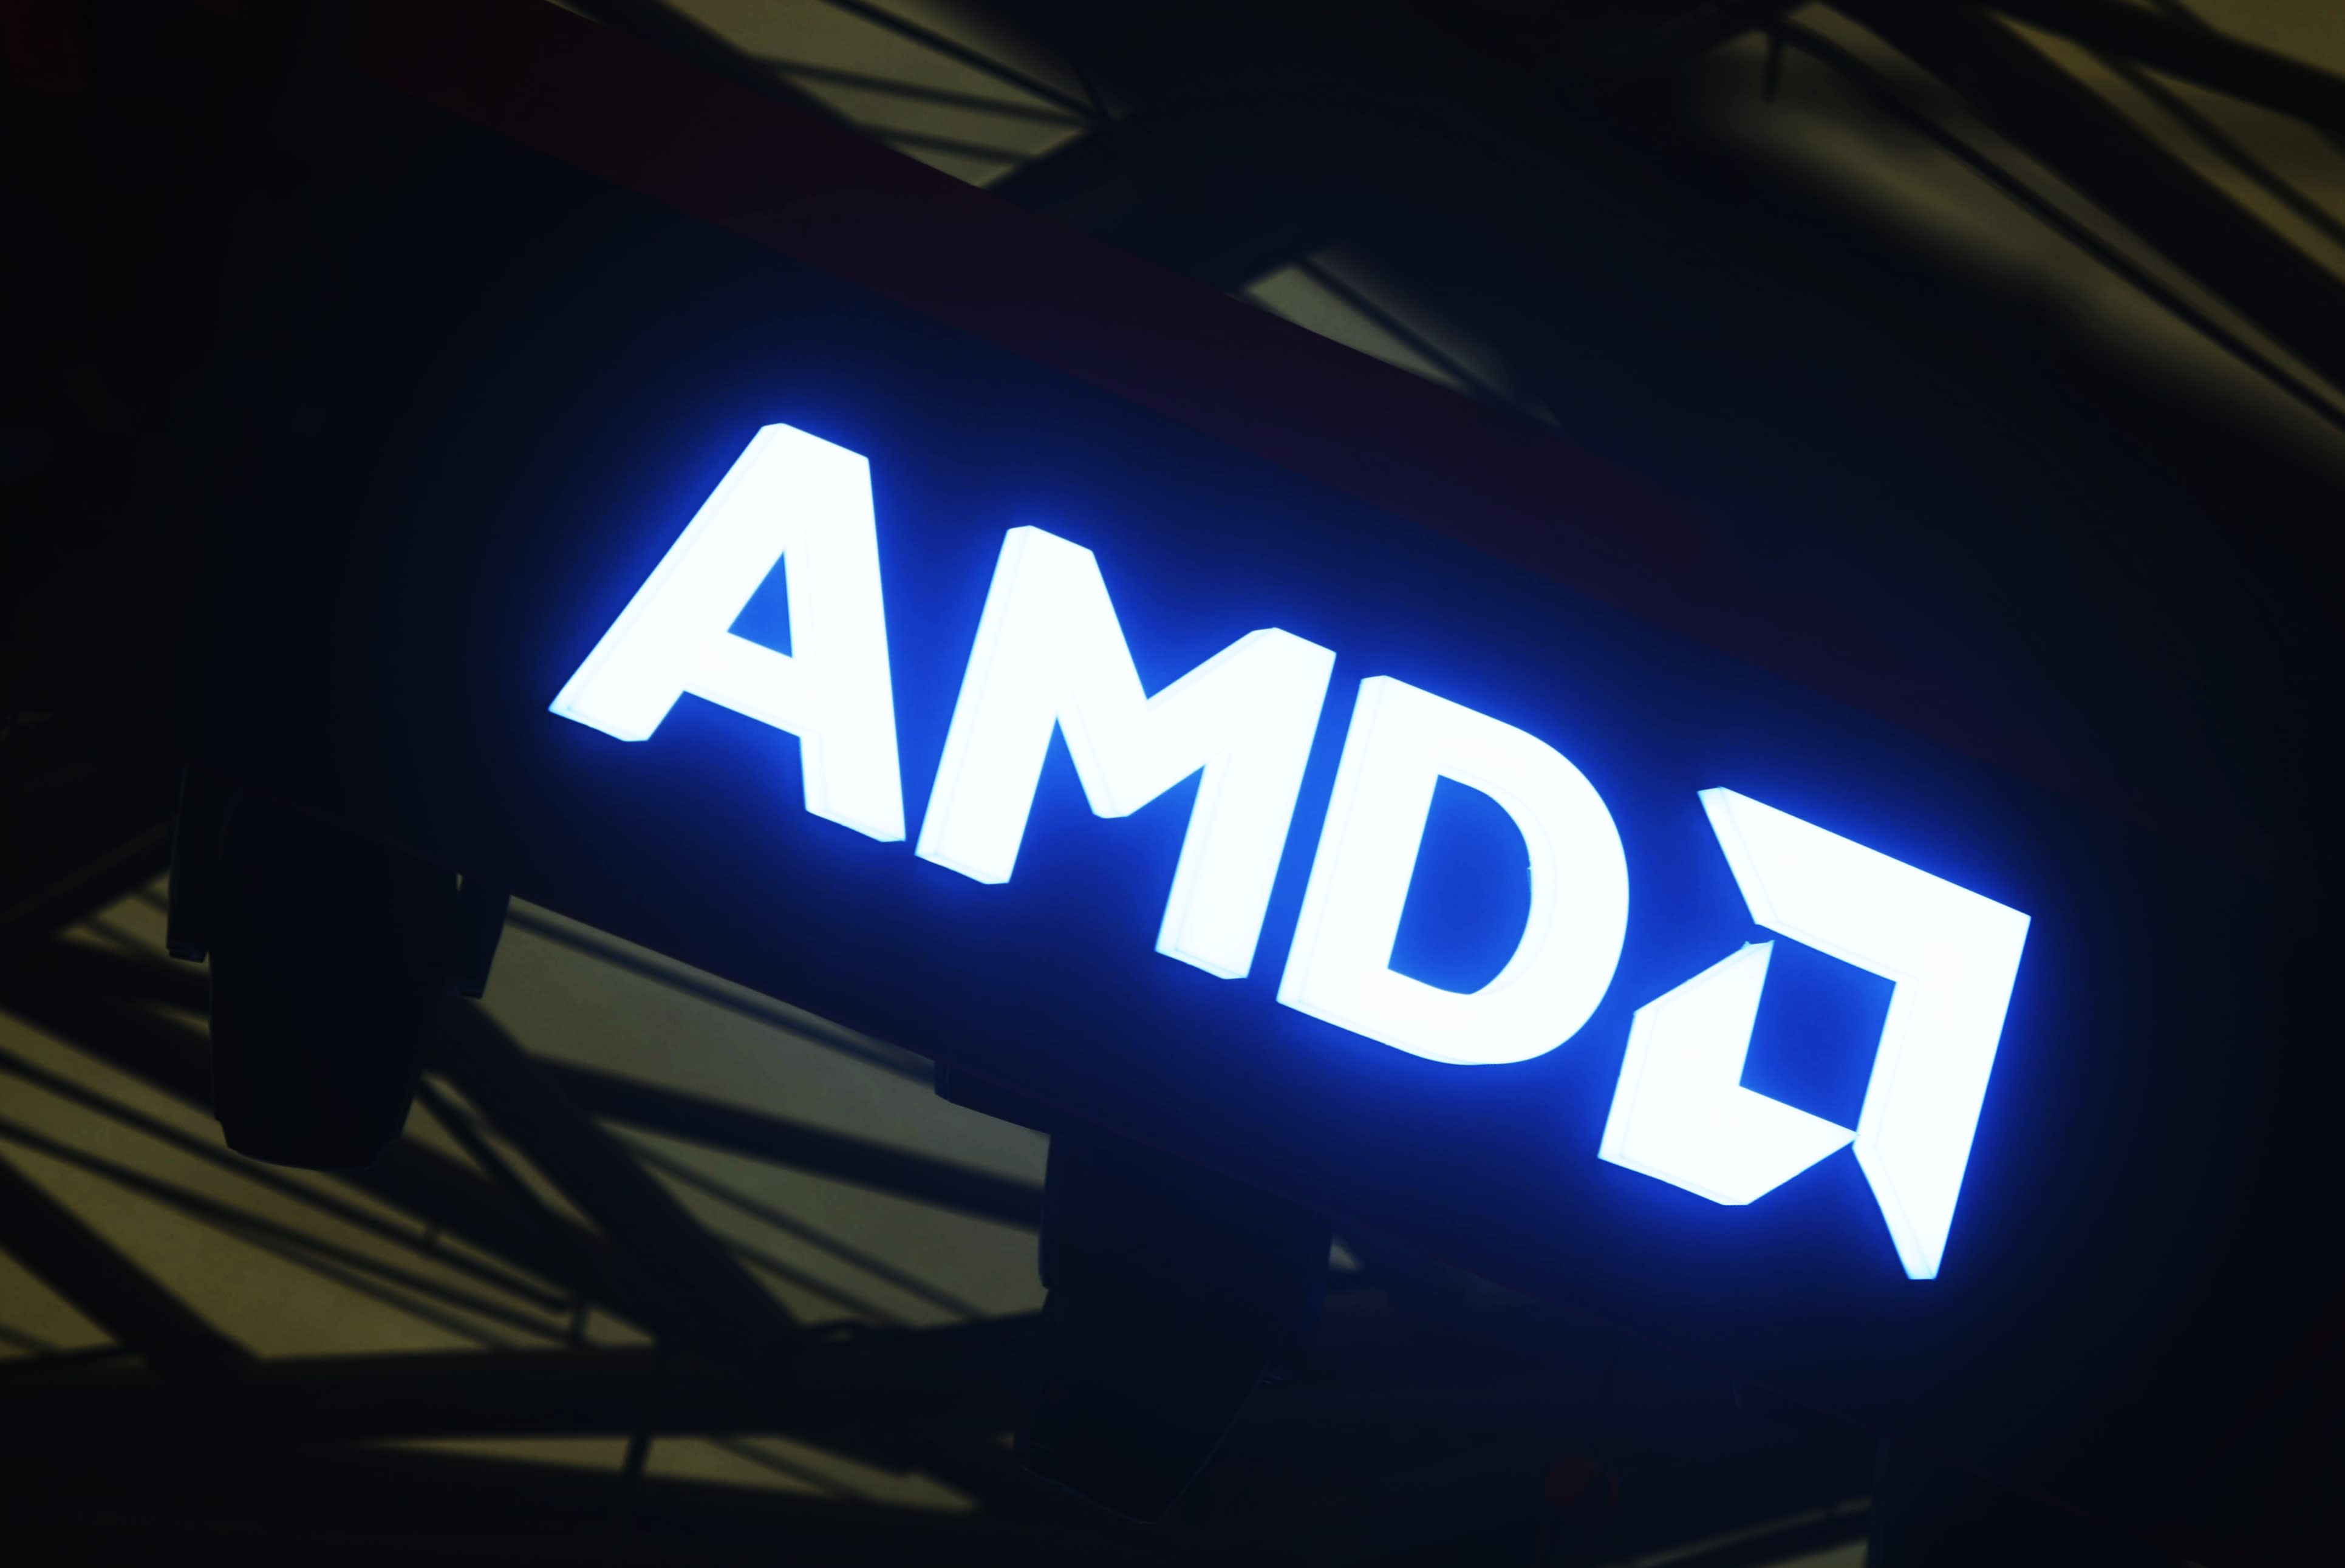 NvidiaやIntelとの技術競争が激化する中、AMDはAI搭載PCに賭けている